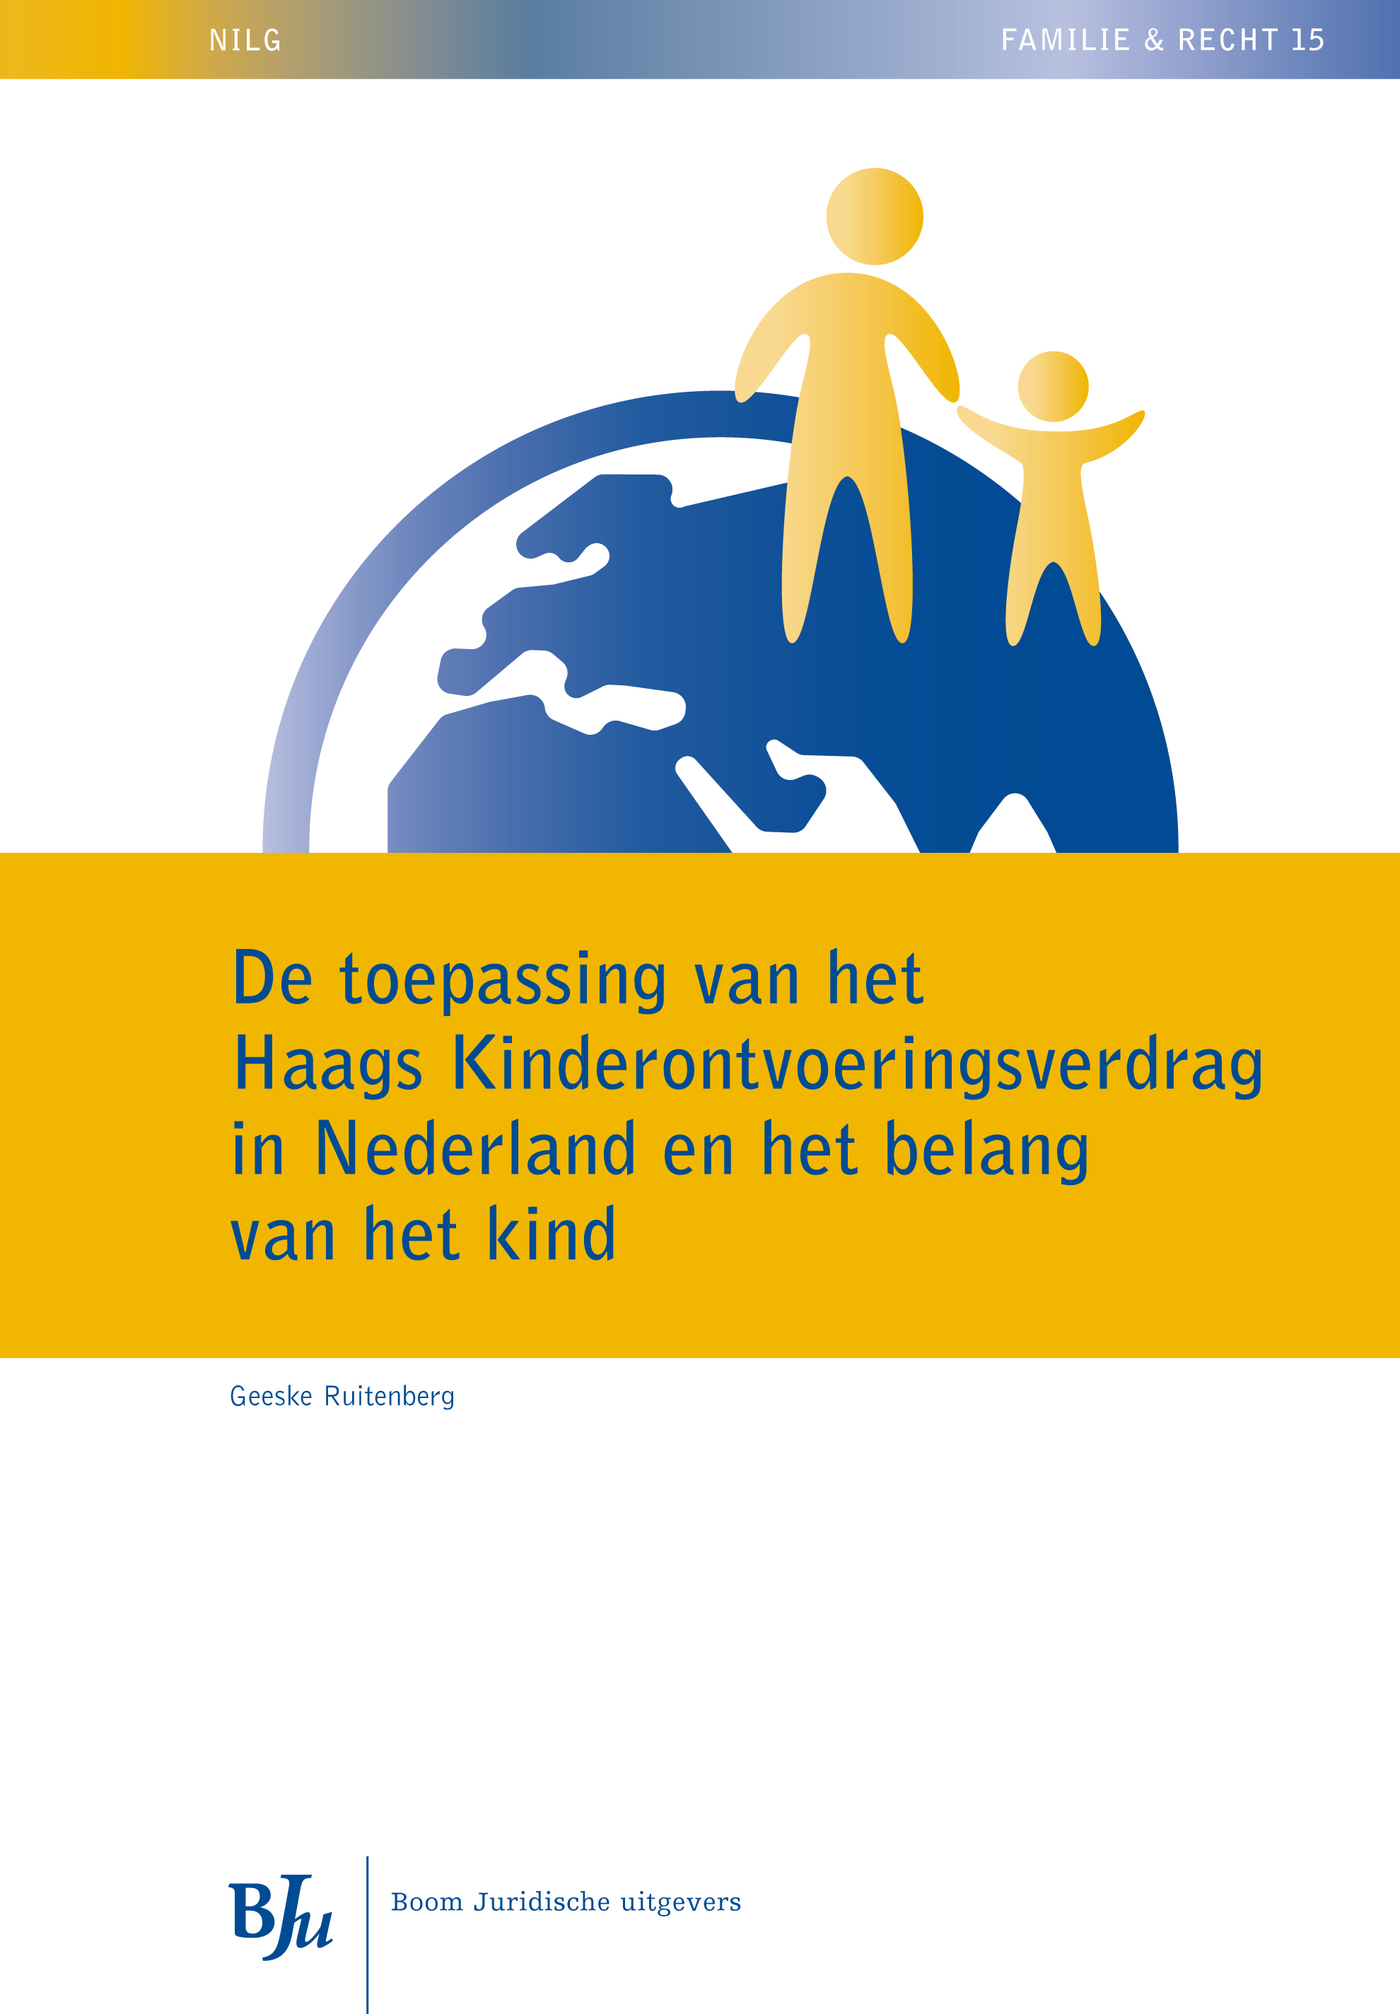 De toepassing van het Haags Kinderontvoeringsverdrag in Nederland en het belang van het kind (Ebook)